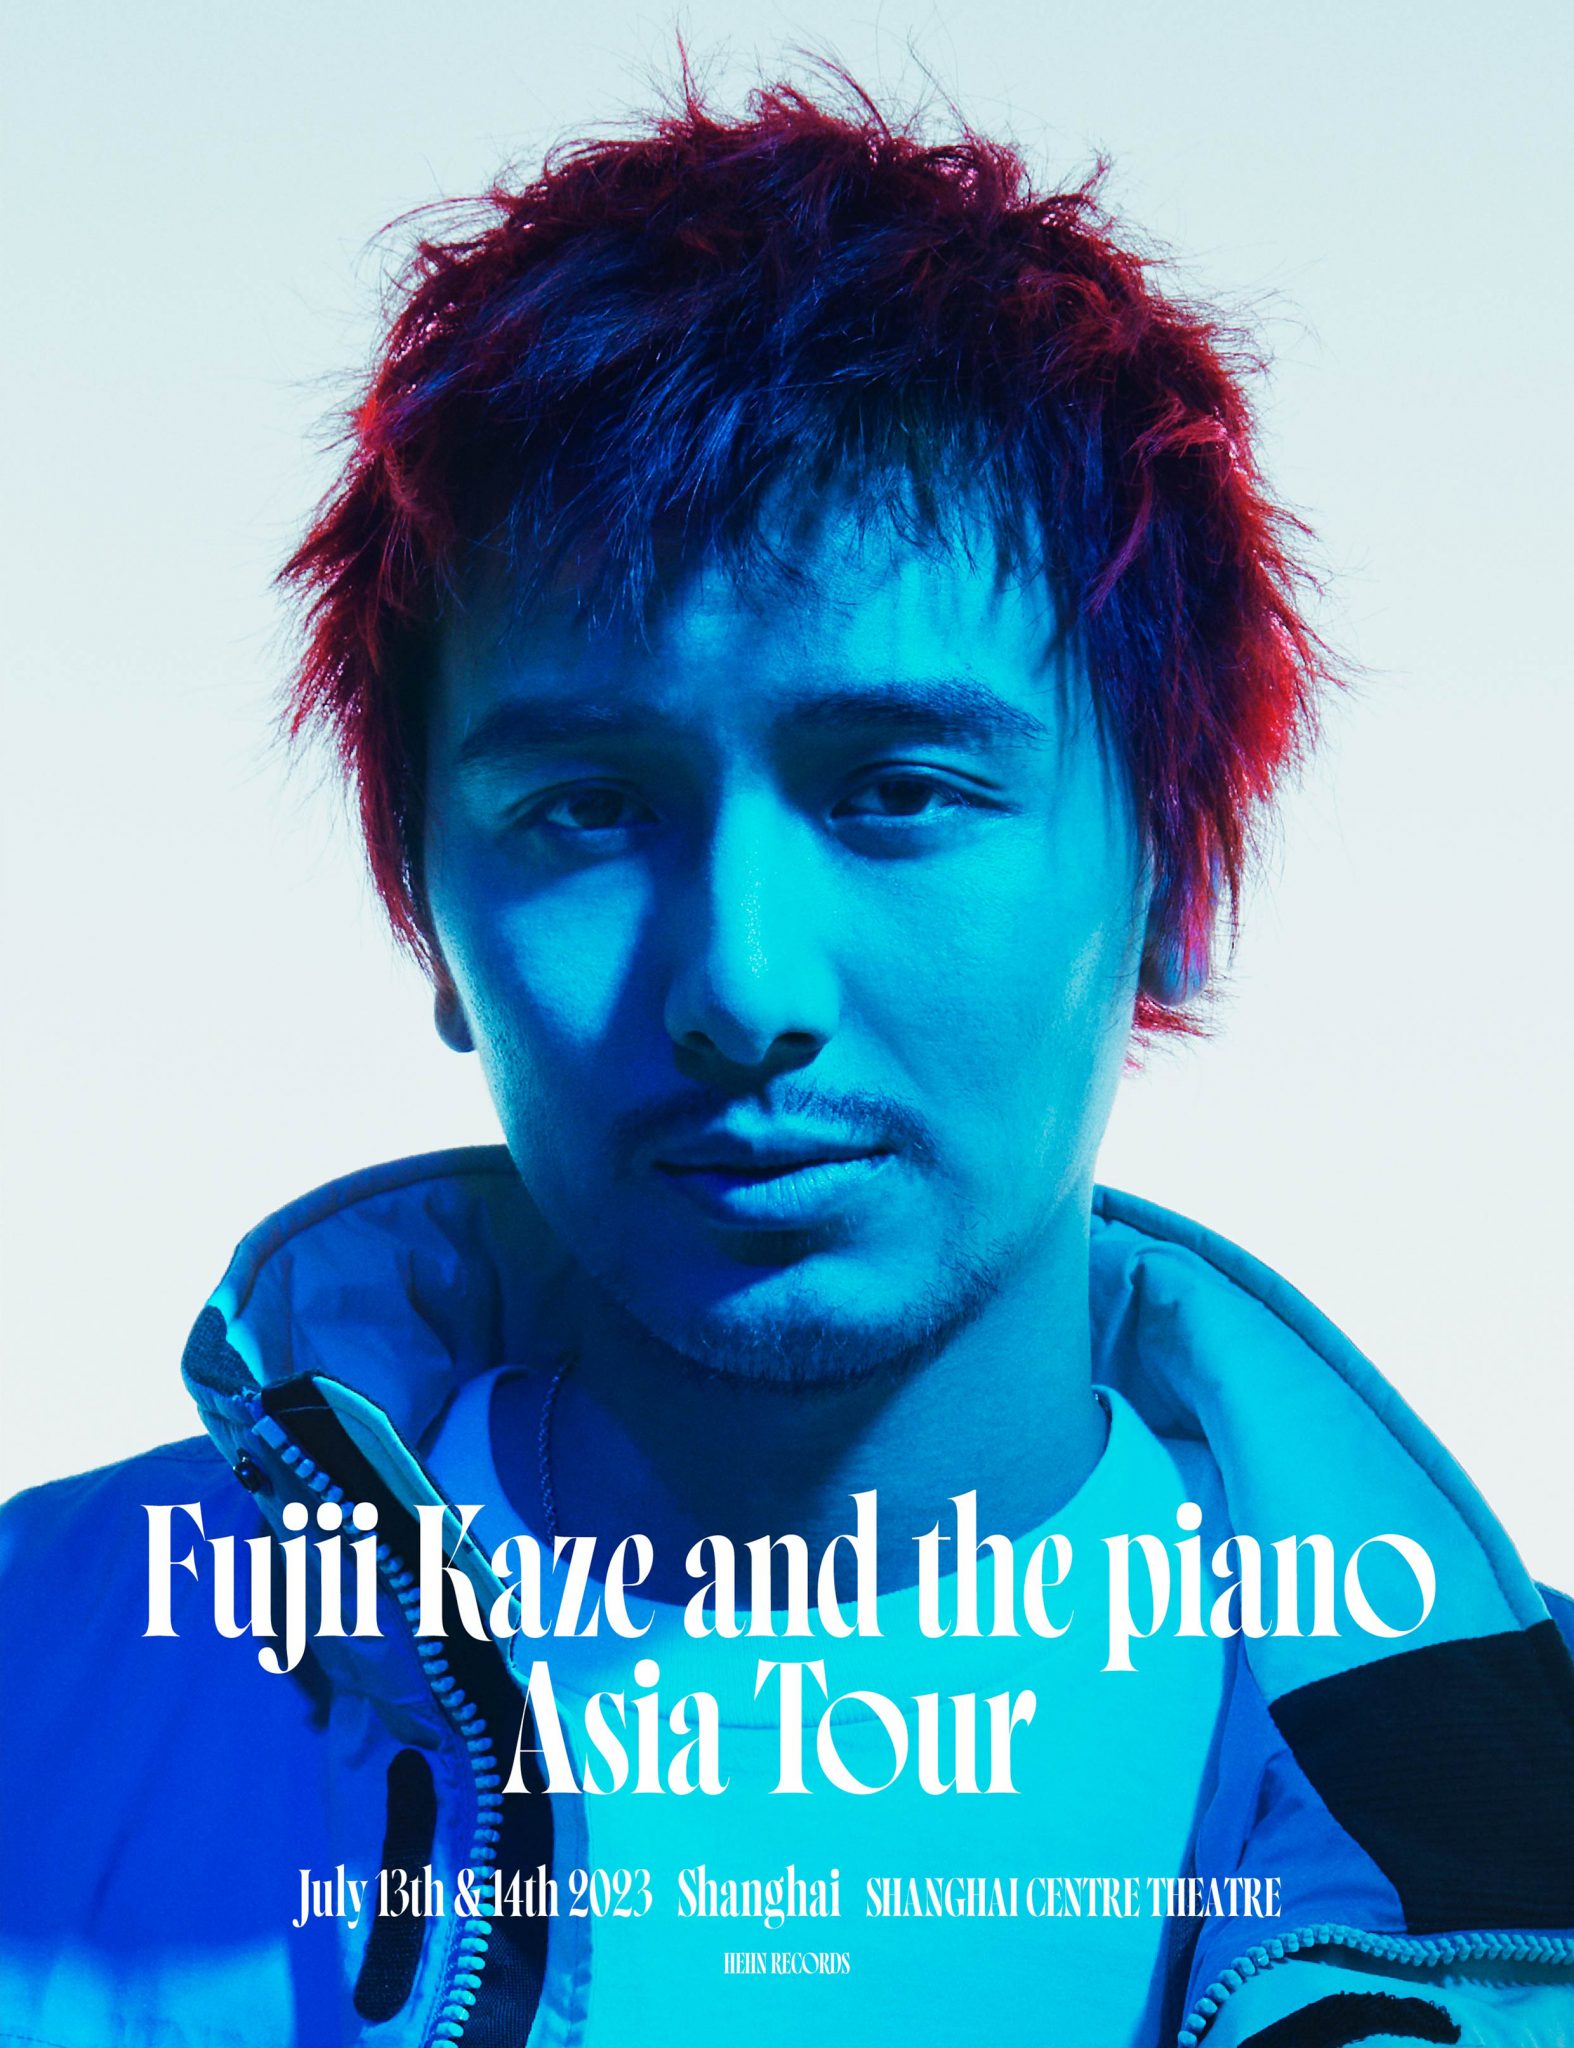 Fujii Kaze and the piano Asia Tour [Shanghai]